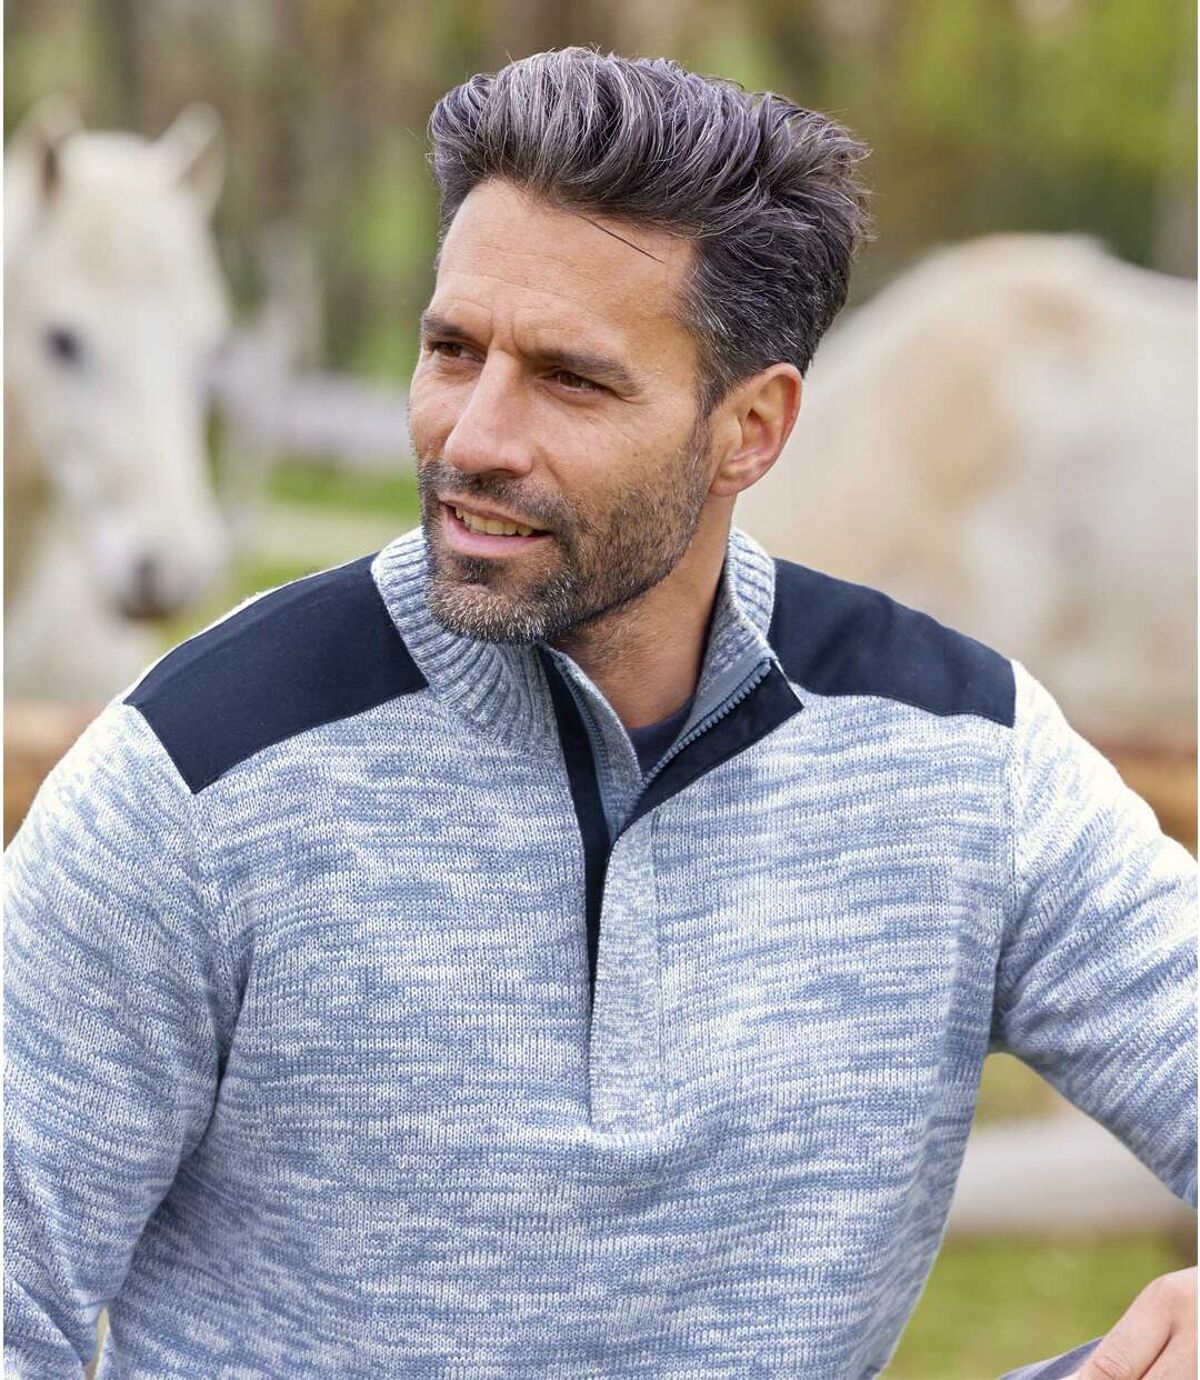 Bavlněný melírovaný pulovr se zipovým zapínáním u krku Atlas For Men